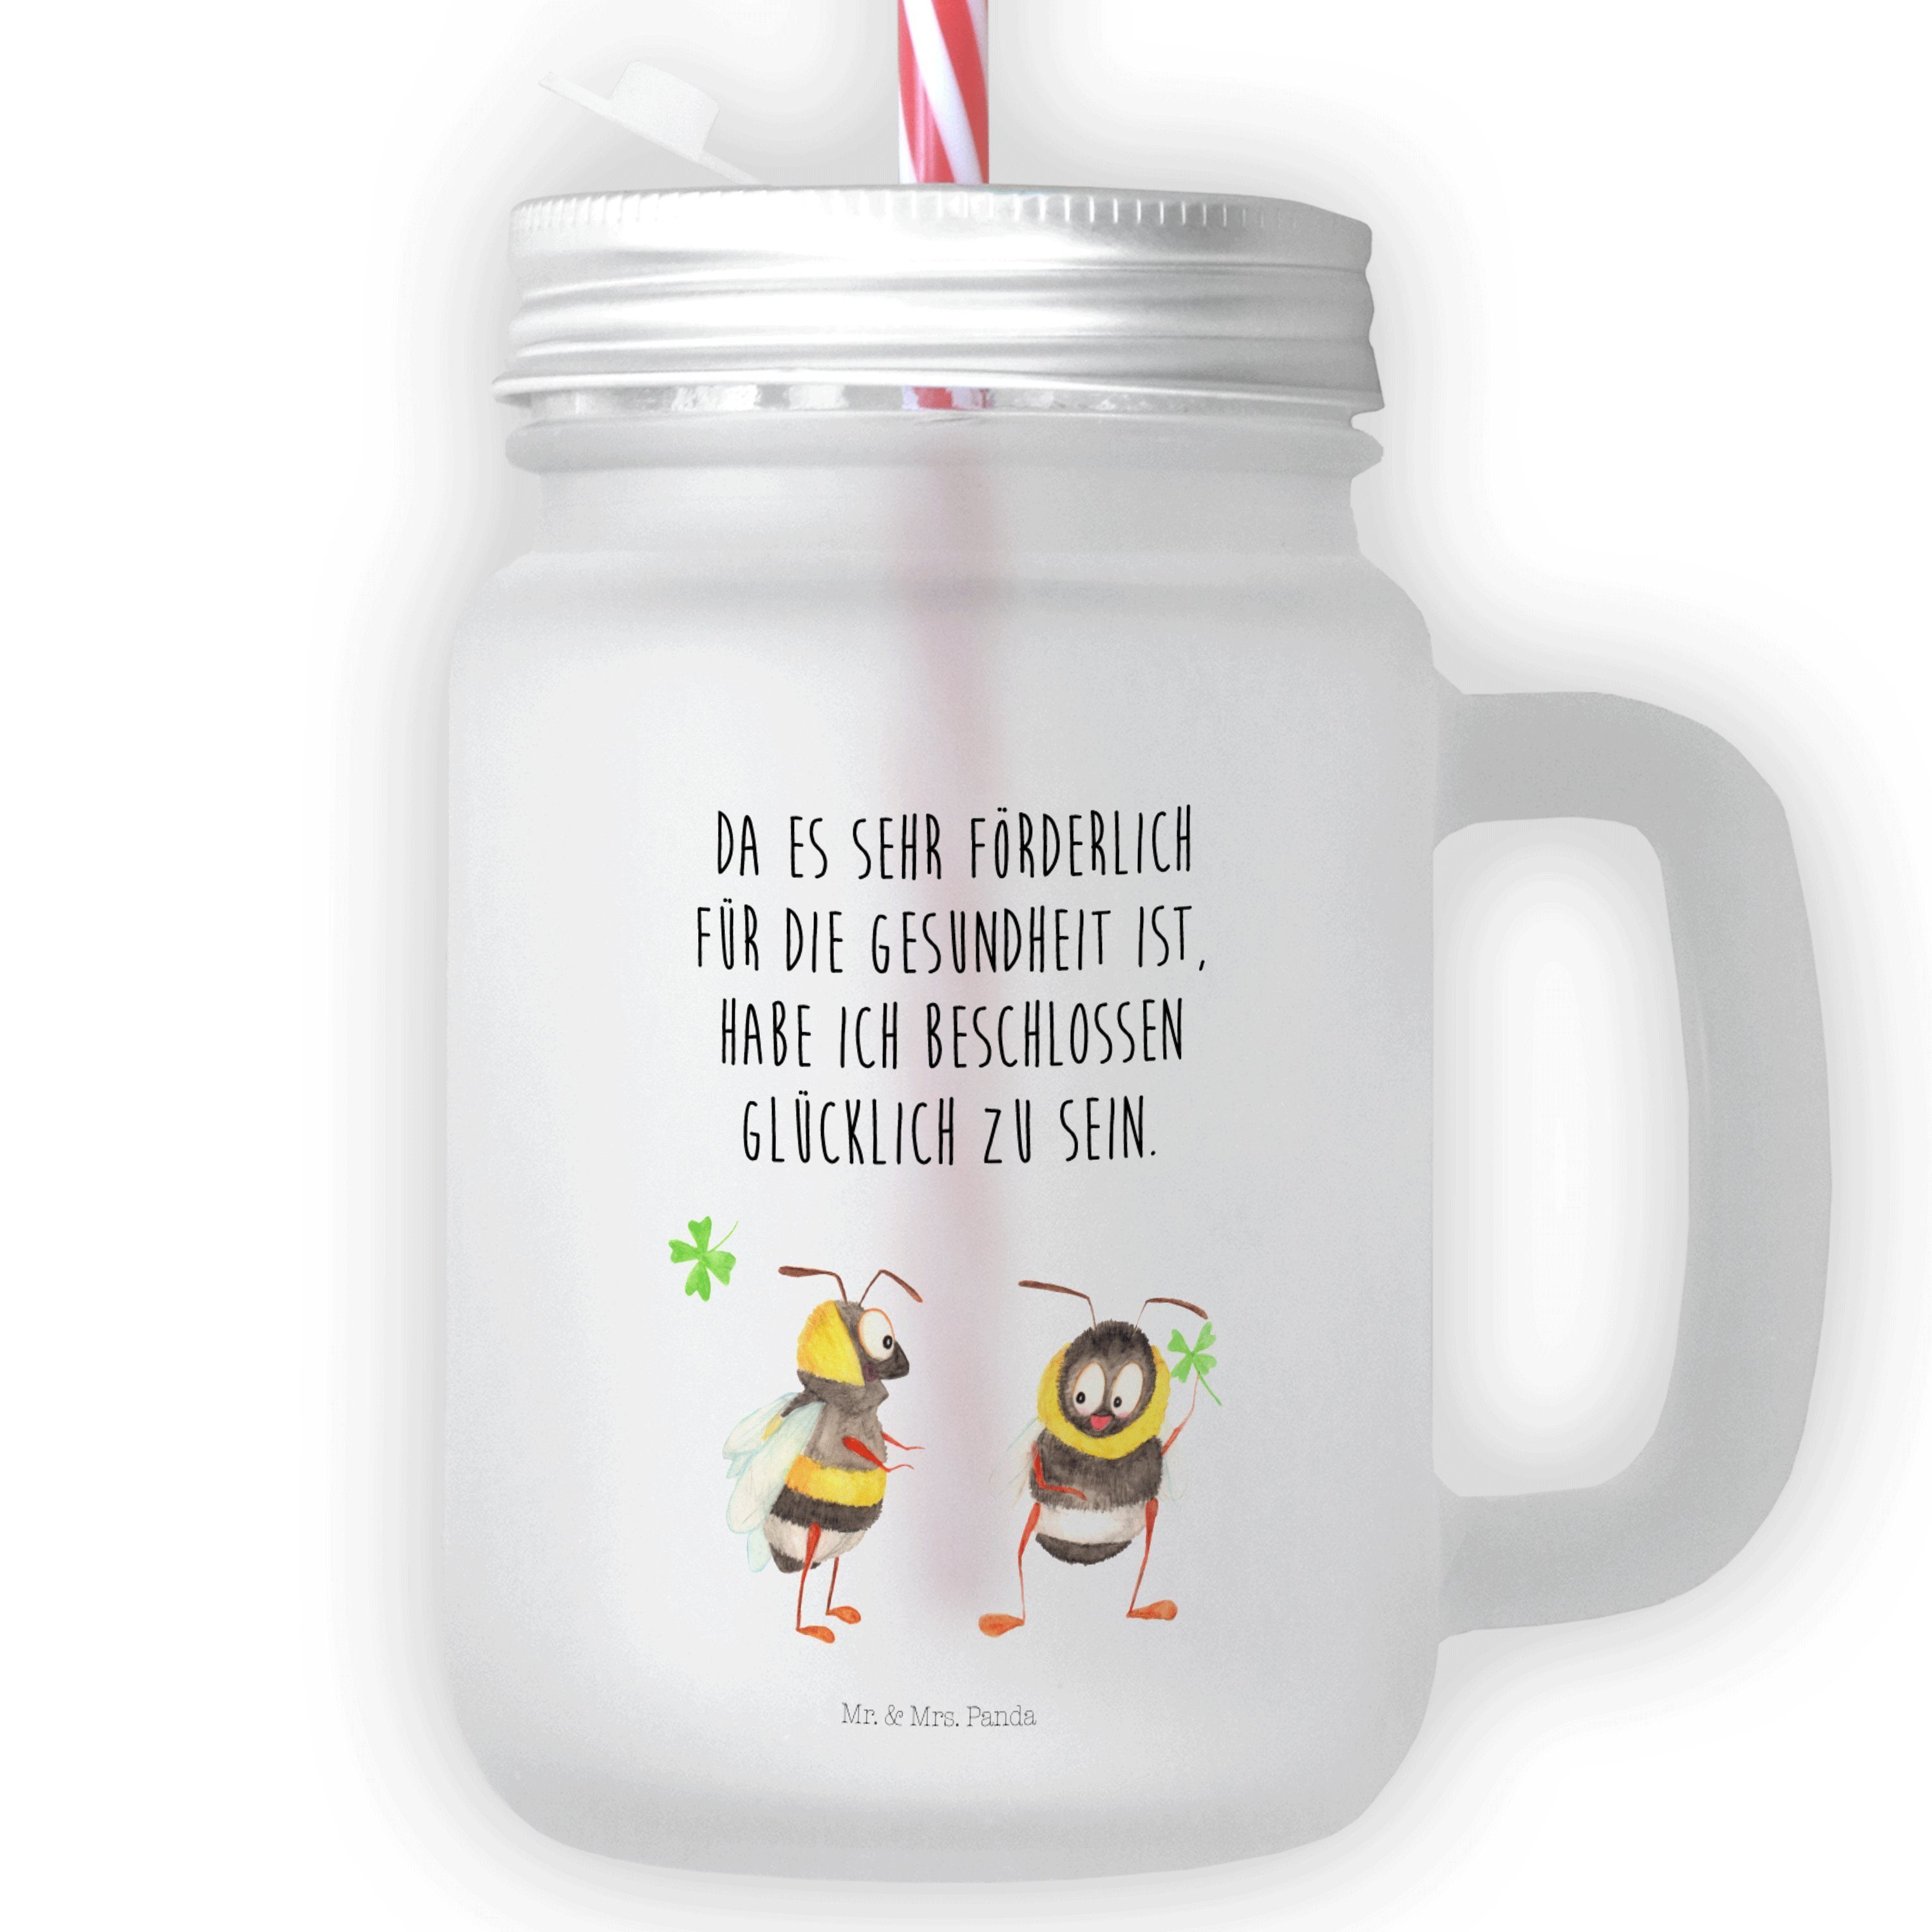 riesengroß Mr. & Mrs. Panda Glas Premium - Geschenk, Hummeln Glas, Transparent Glas Kleeblatt - g, Schraubdeckel mit